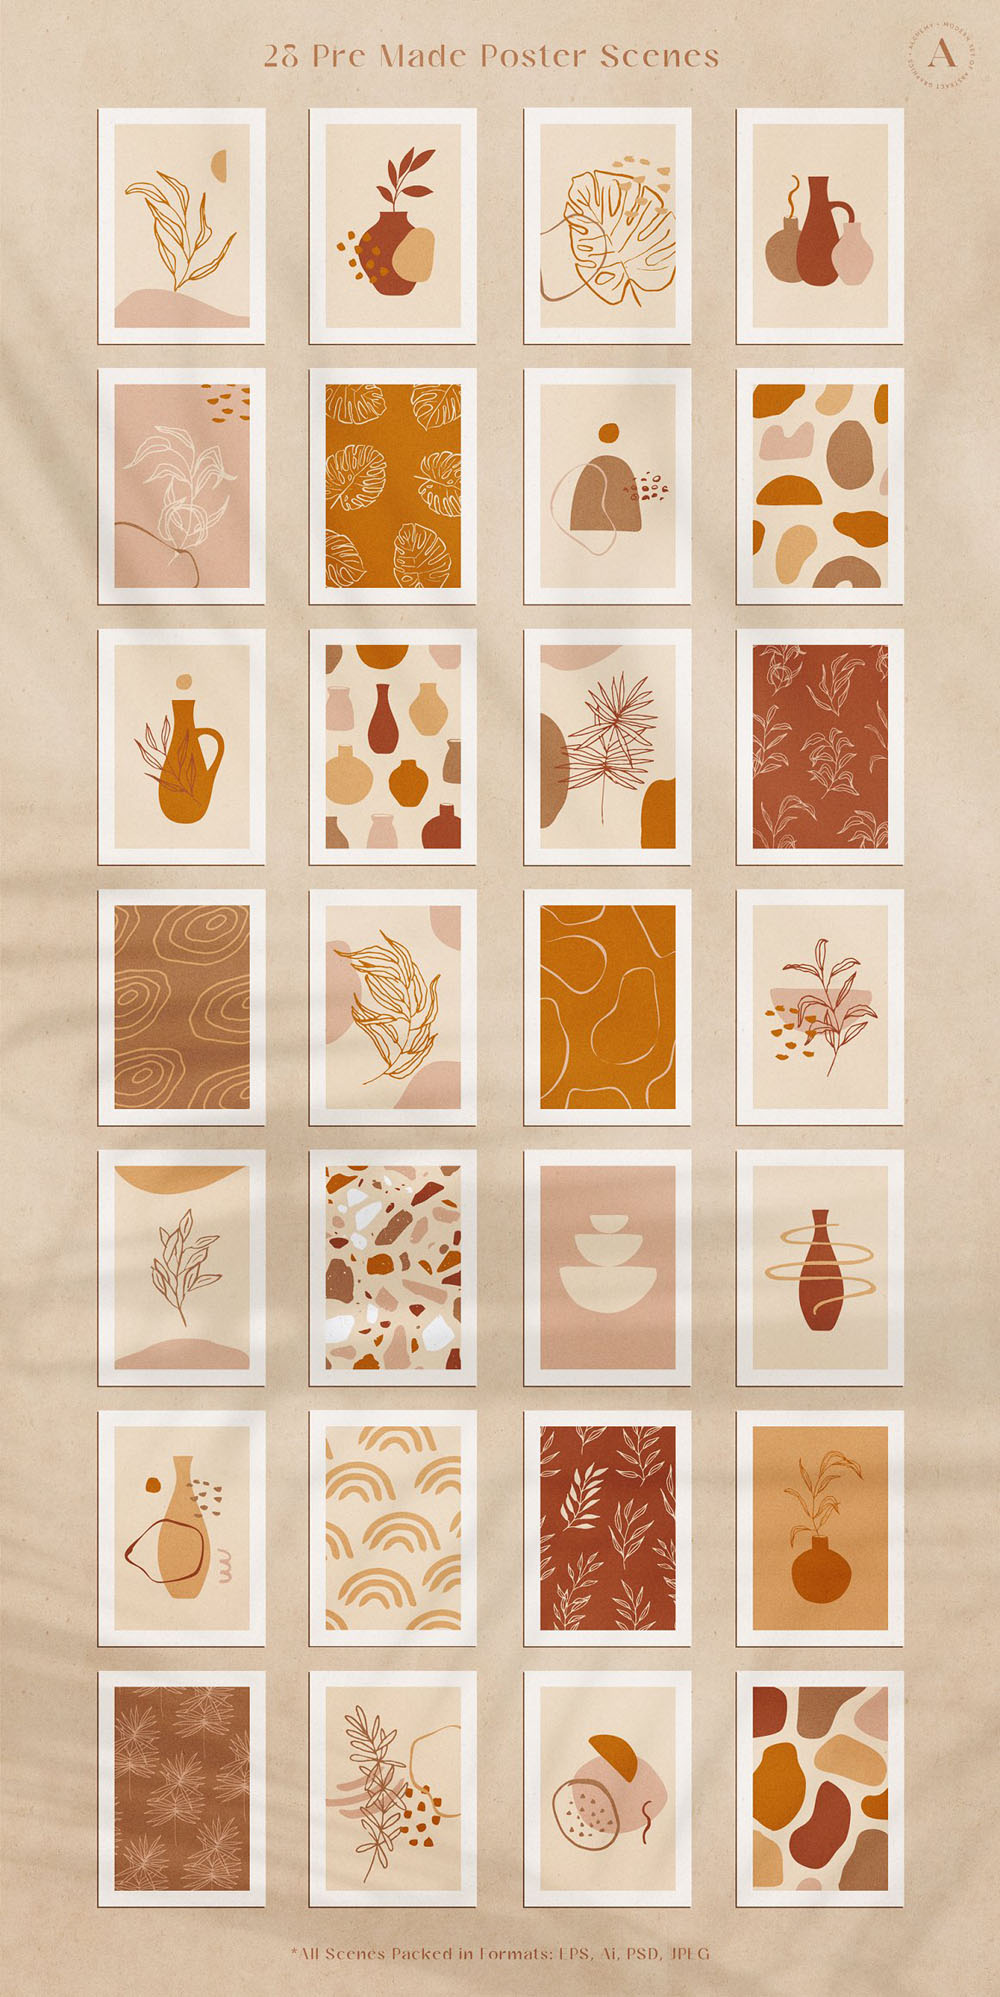 218+植物花瓶等现代抽象图案PSD/AI/EPS素材 图片素材 第10张